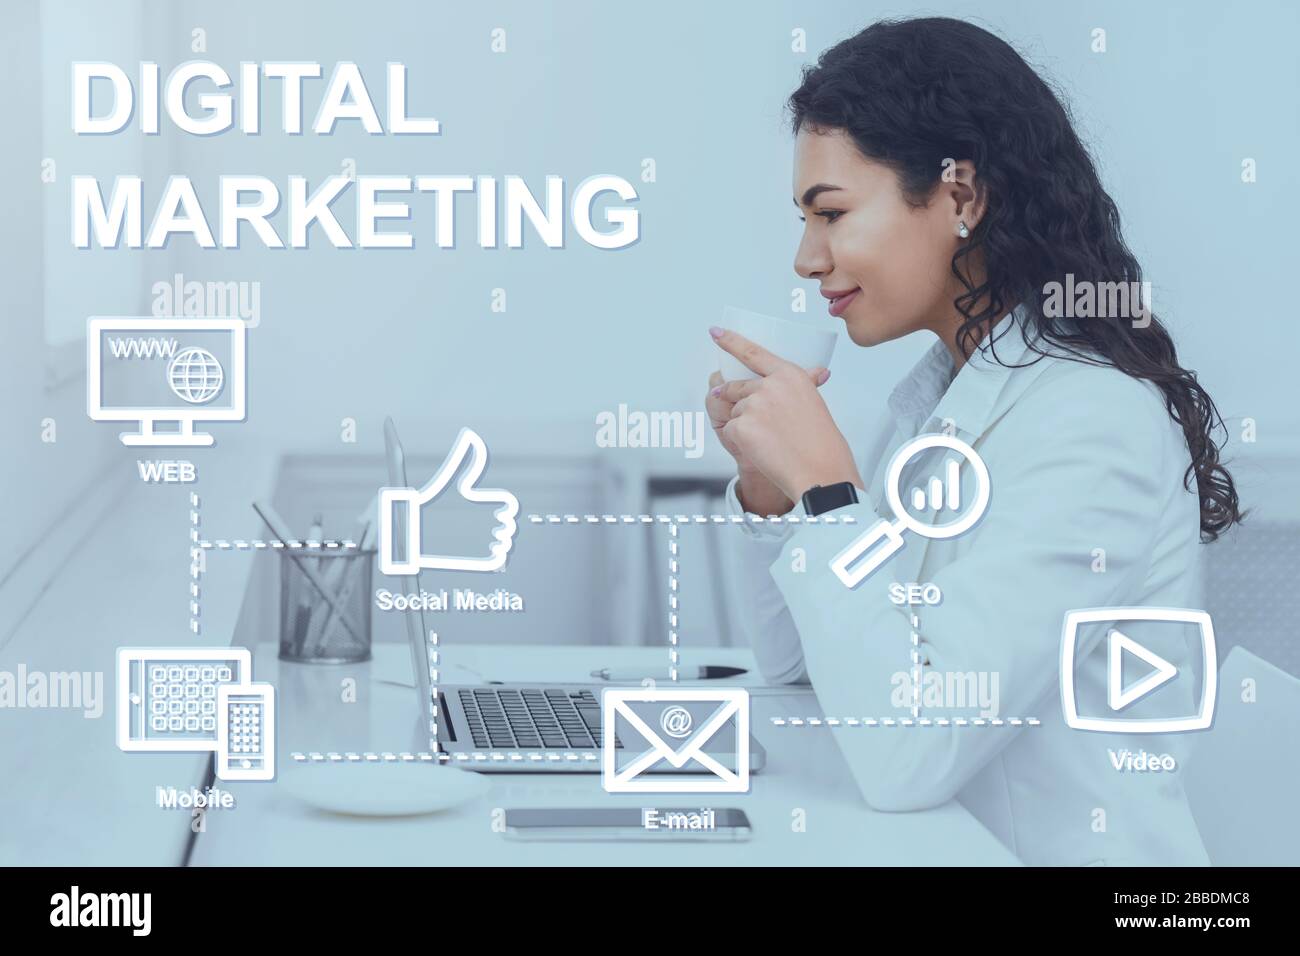 Marketing numérique. Collage avec une femme d'affaires hispanique au travail et icônes liées au commerce électronique sur l'écran virtuel Banque D'Images